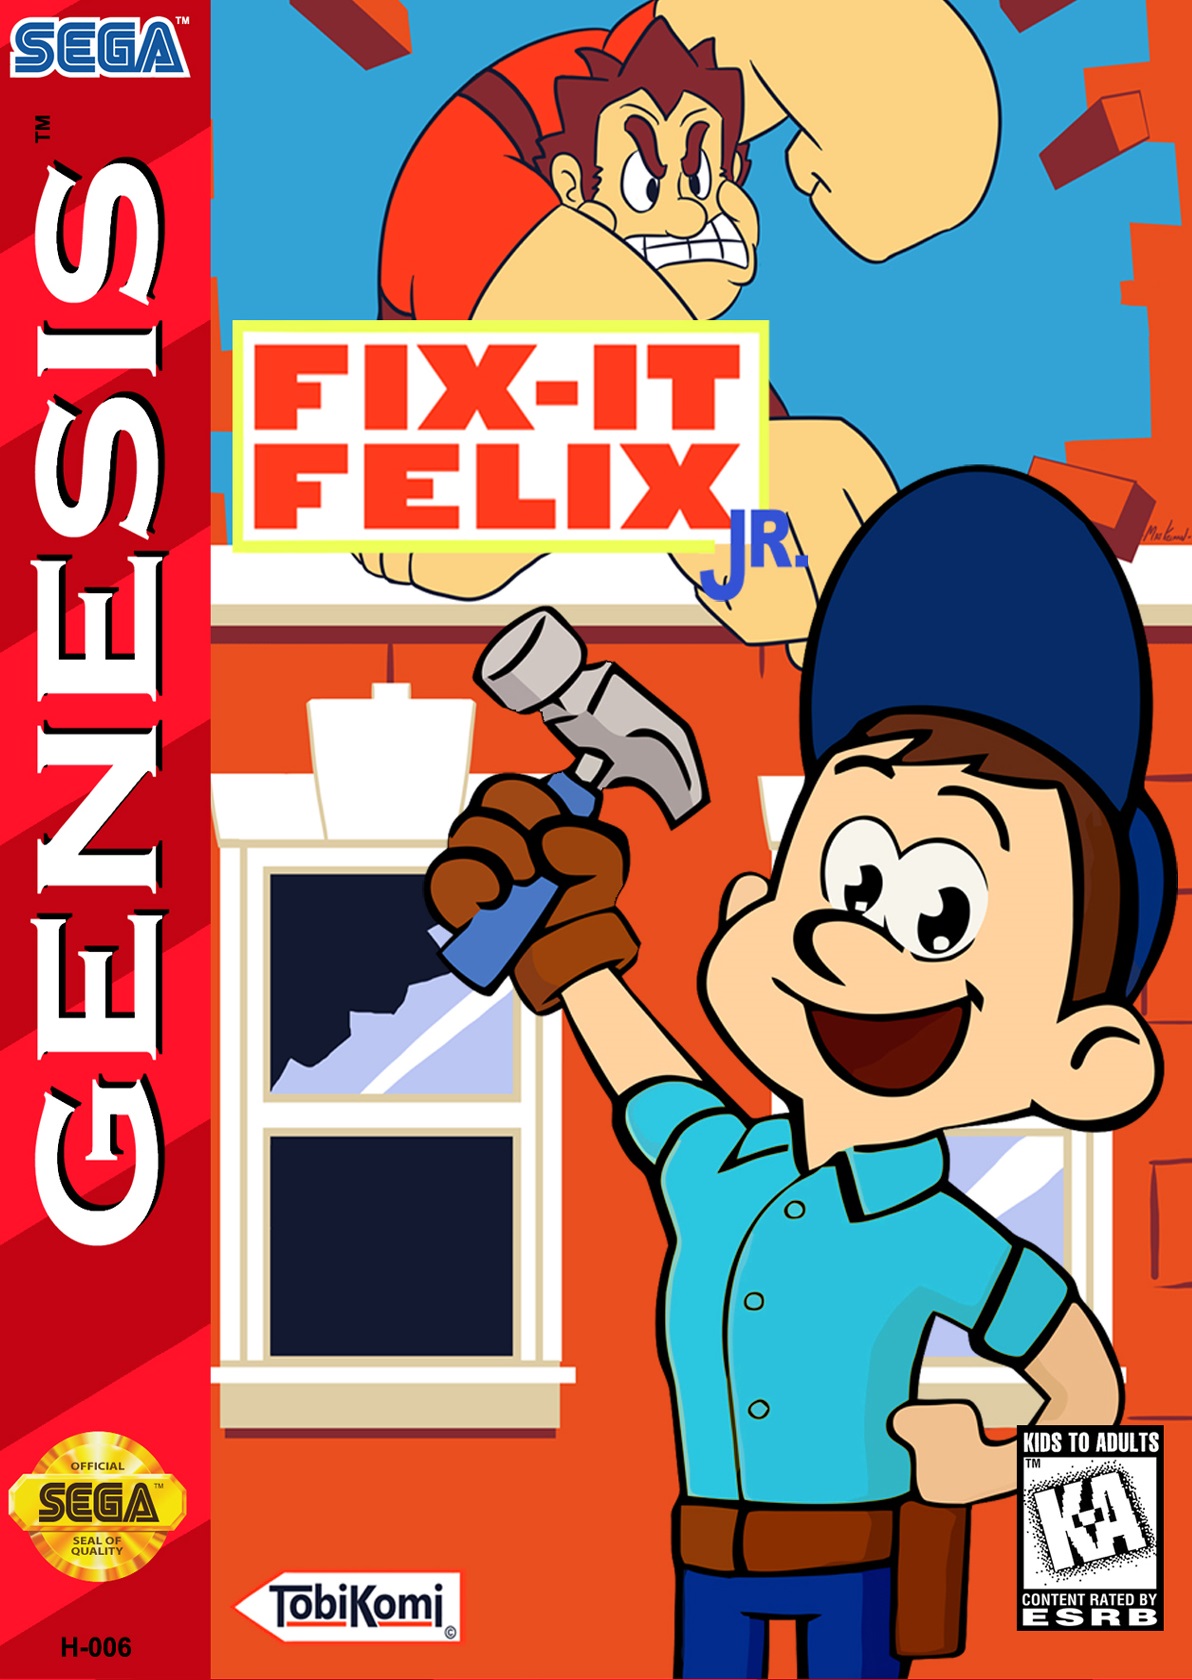 fix it felix jr classic arcade game